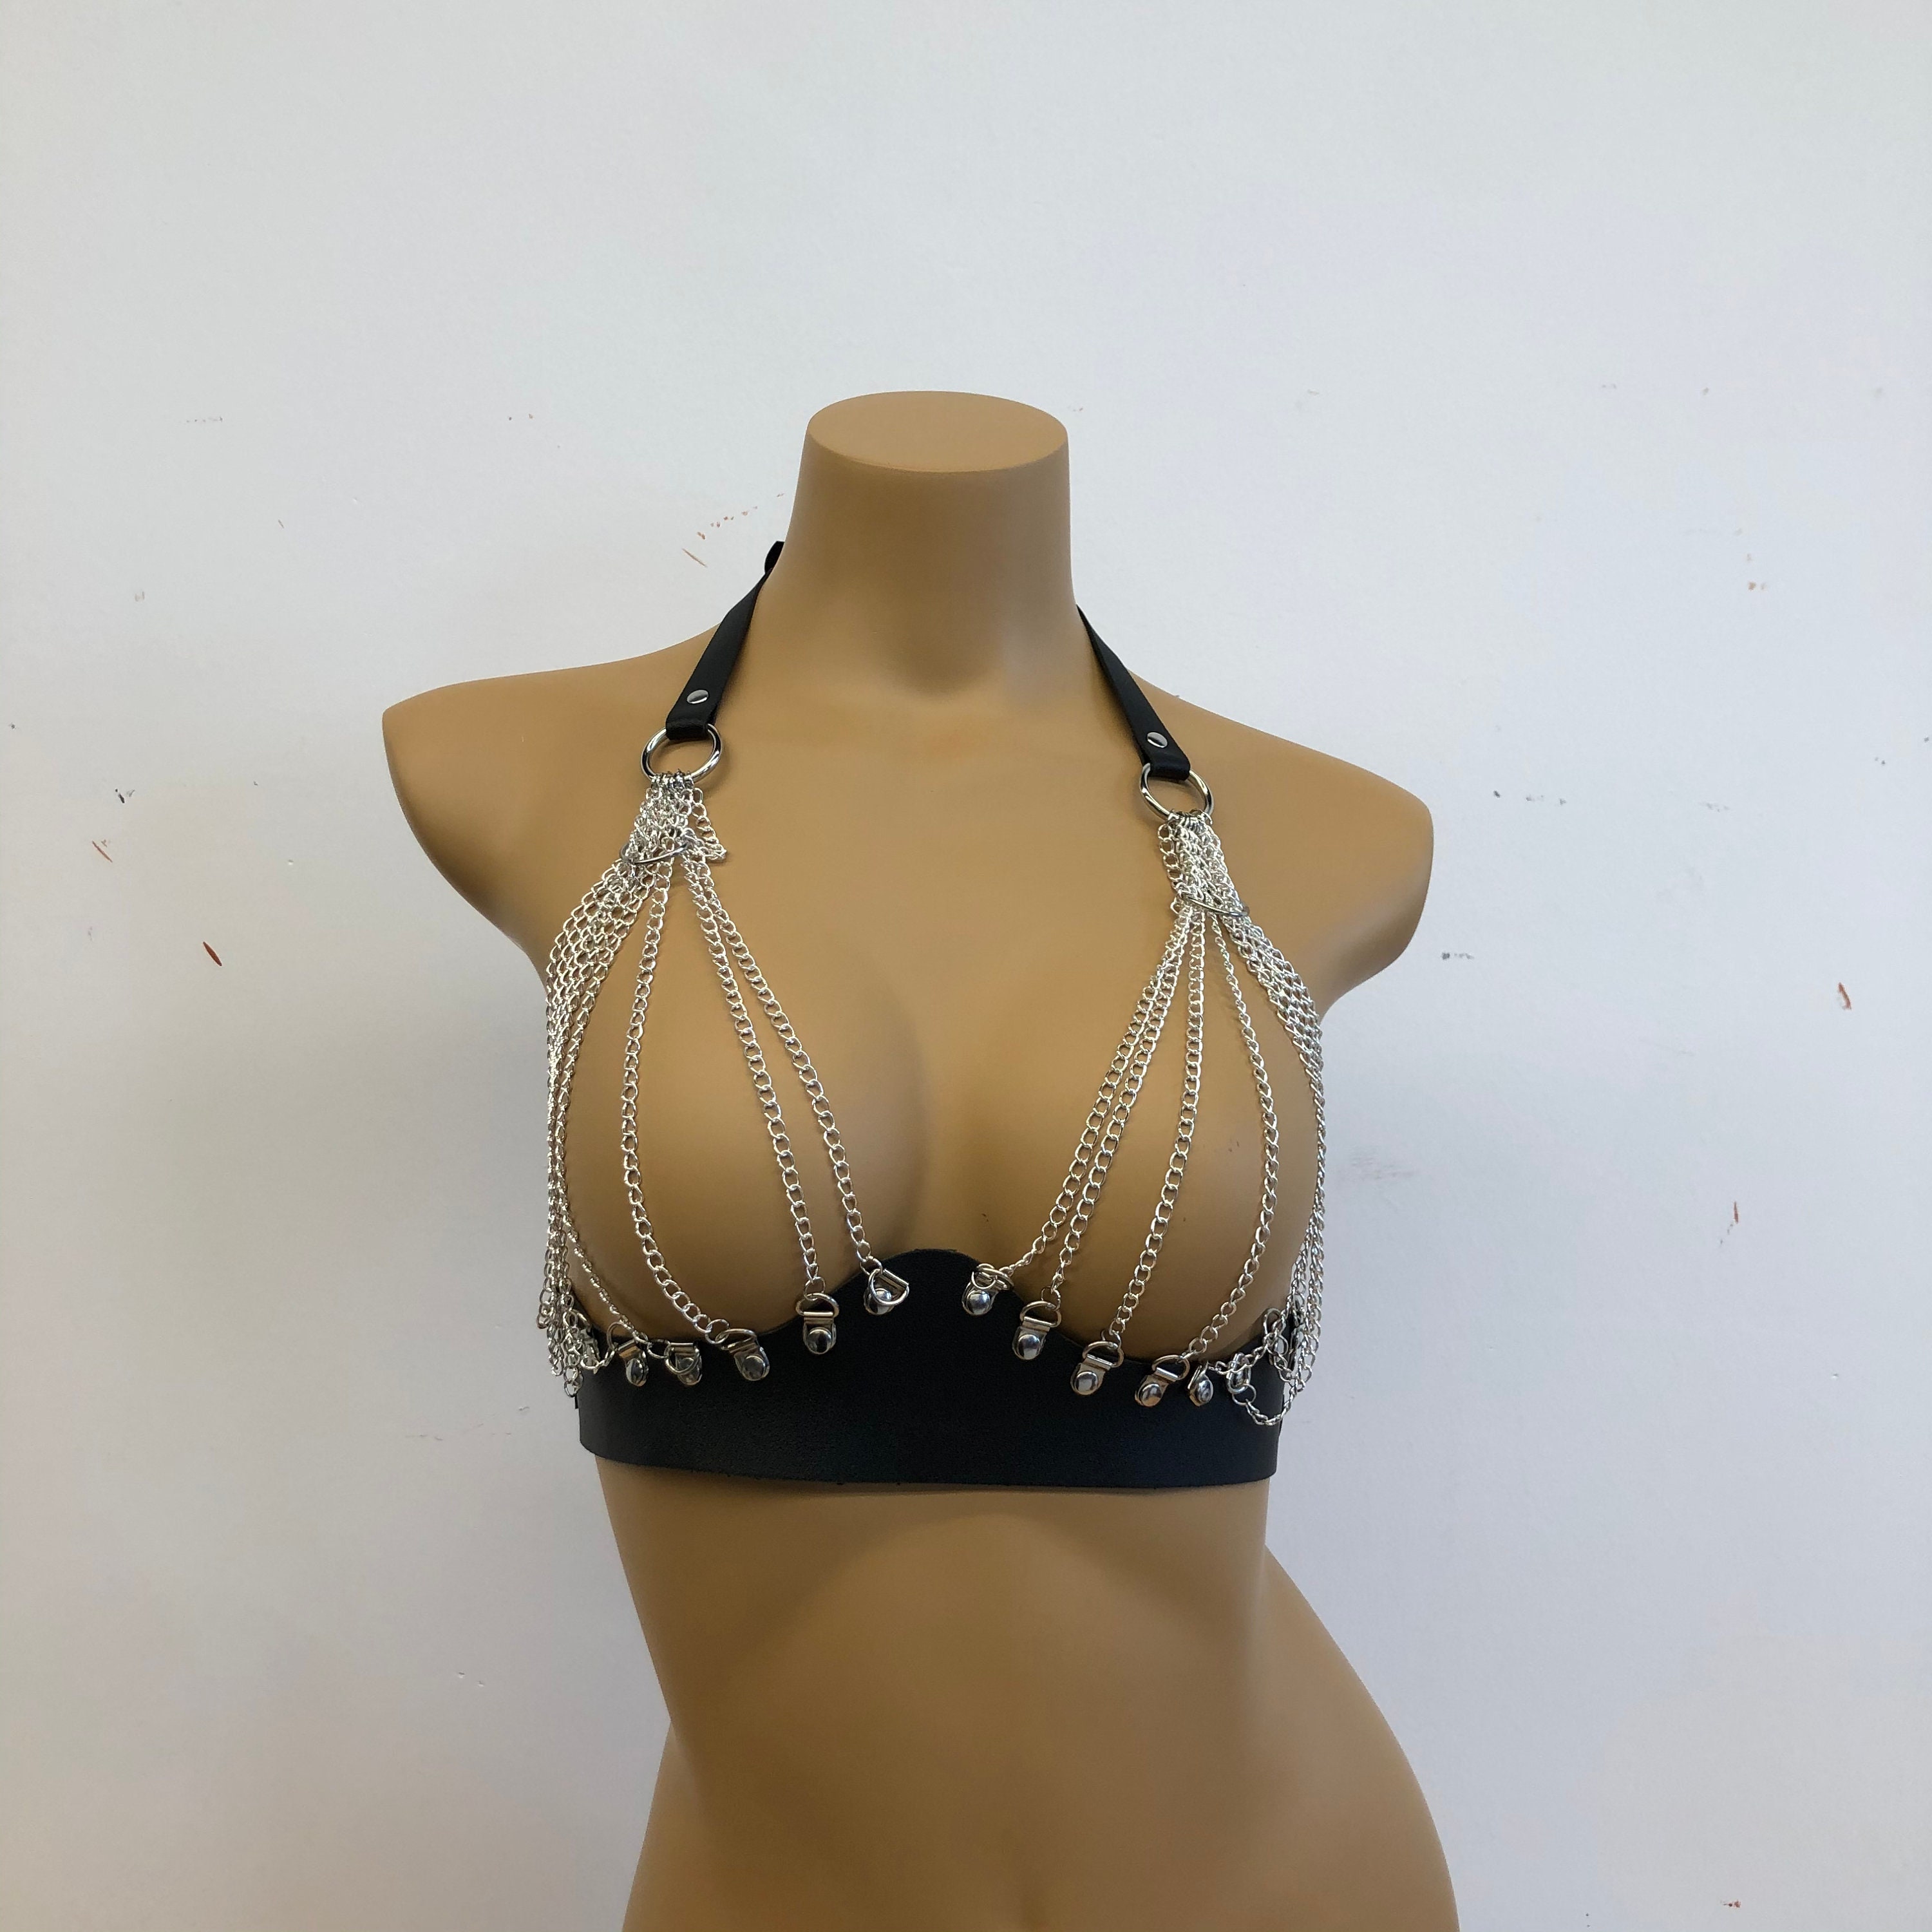 Beaded Body Chain Jewelry Fashion Underwear Chain Bra Chain Body